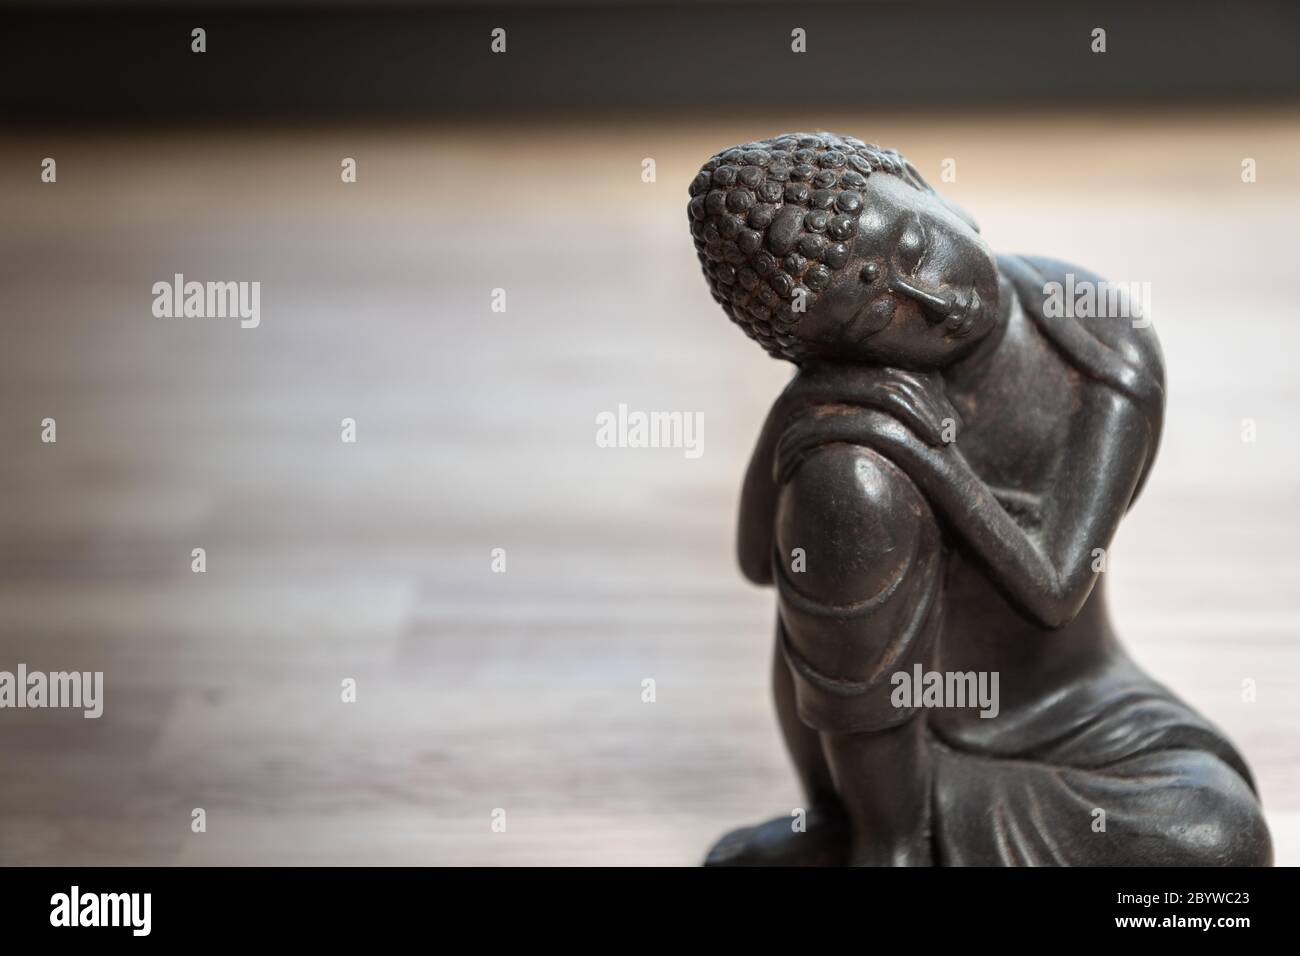 Scultura Buddha sulla scrivania - statua in miniatura buddha sulla scrivania - immagine concettuale per mediazione, consapevolezza, relax, filosofia Foto Stock